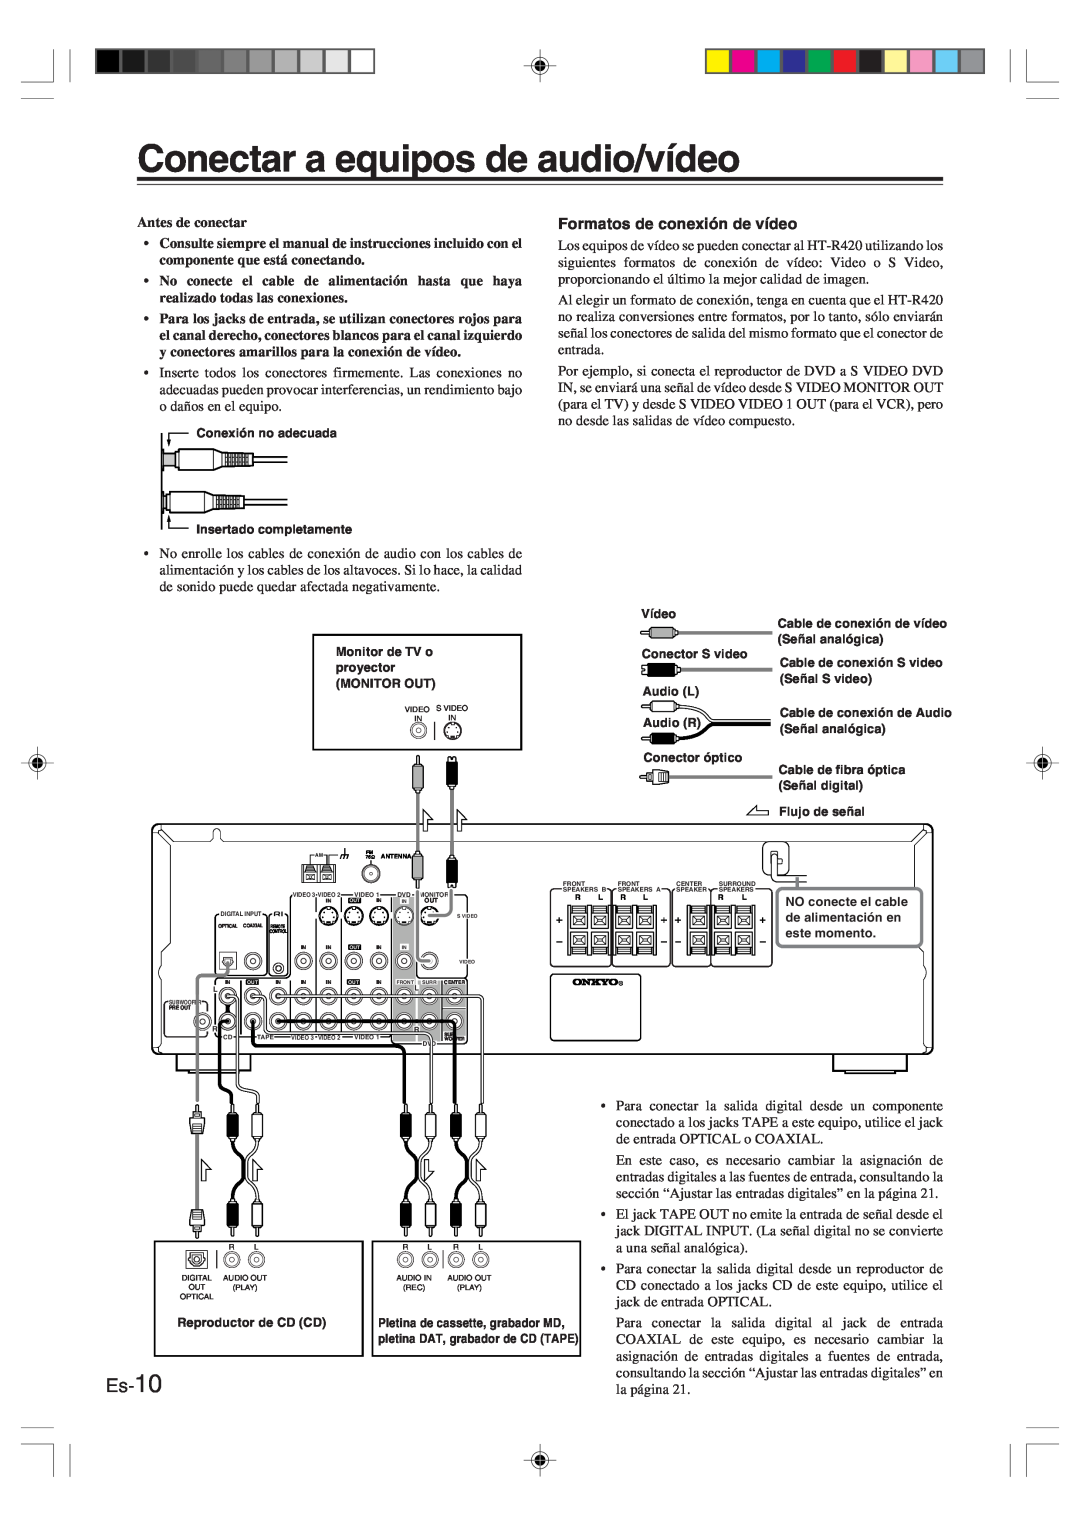 Onkyo HT-R420 manual Conectar a equipos de audio/vídeo, Es-10, Antes de conectar 